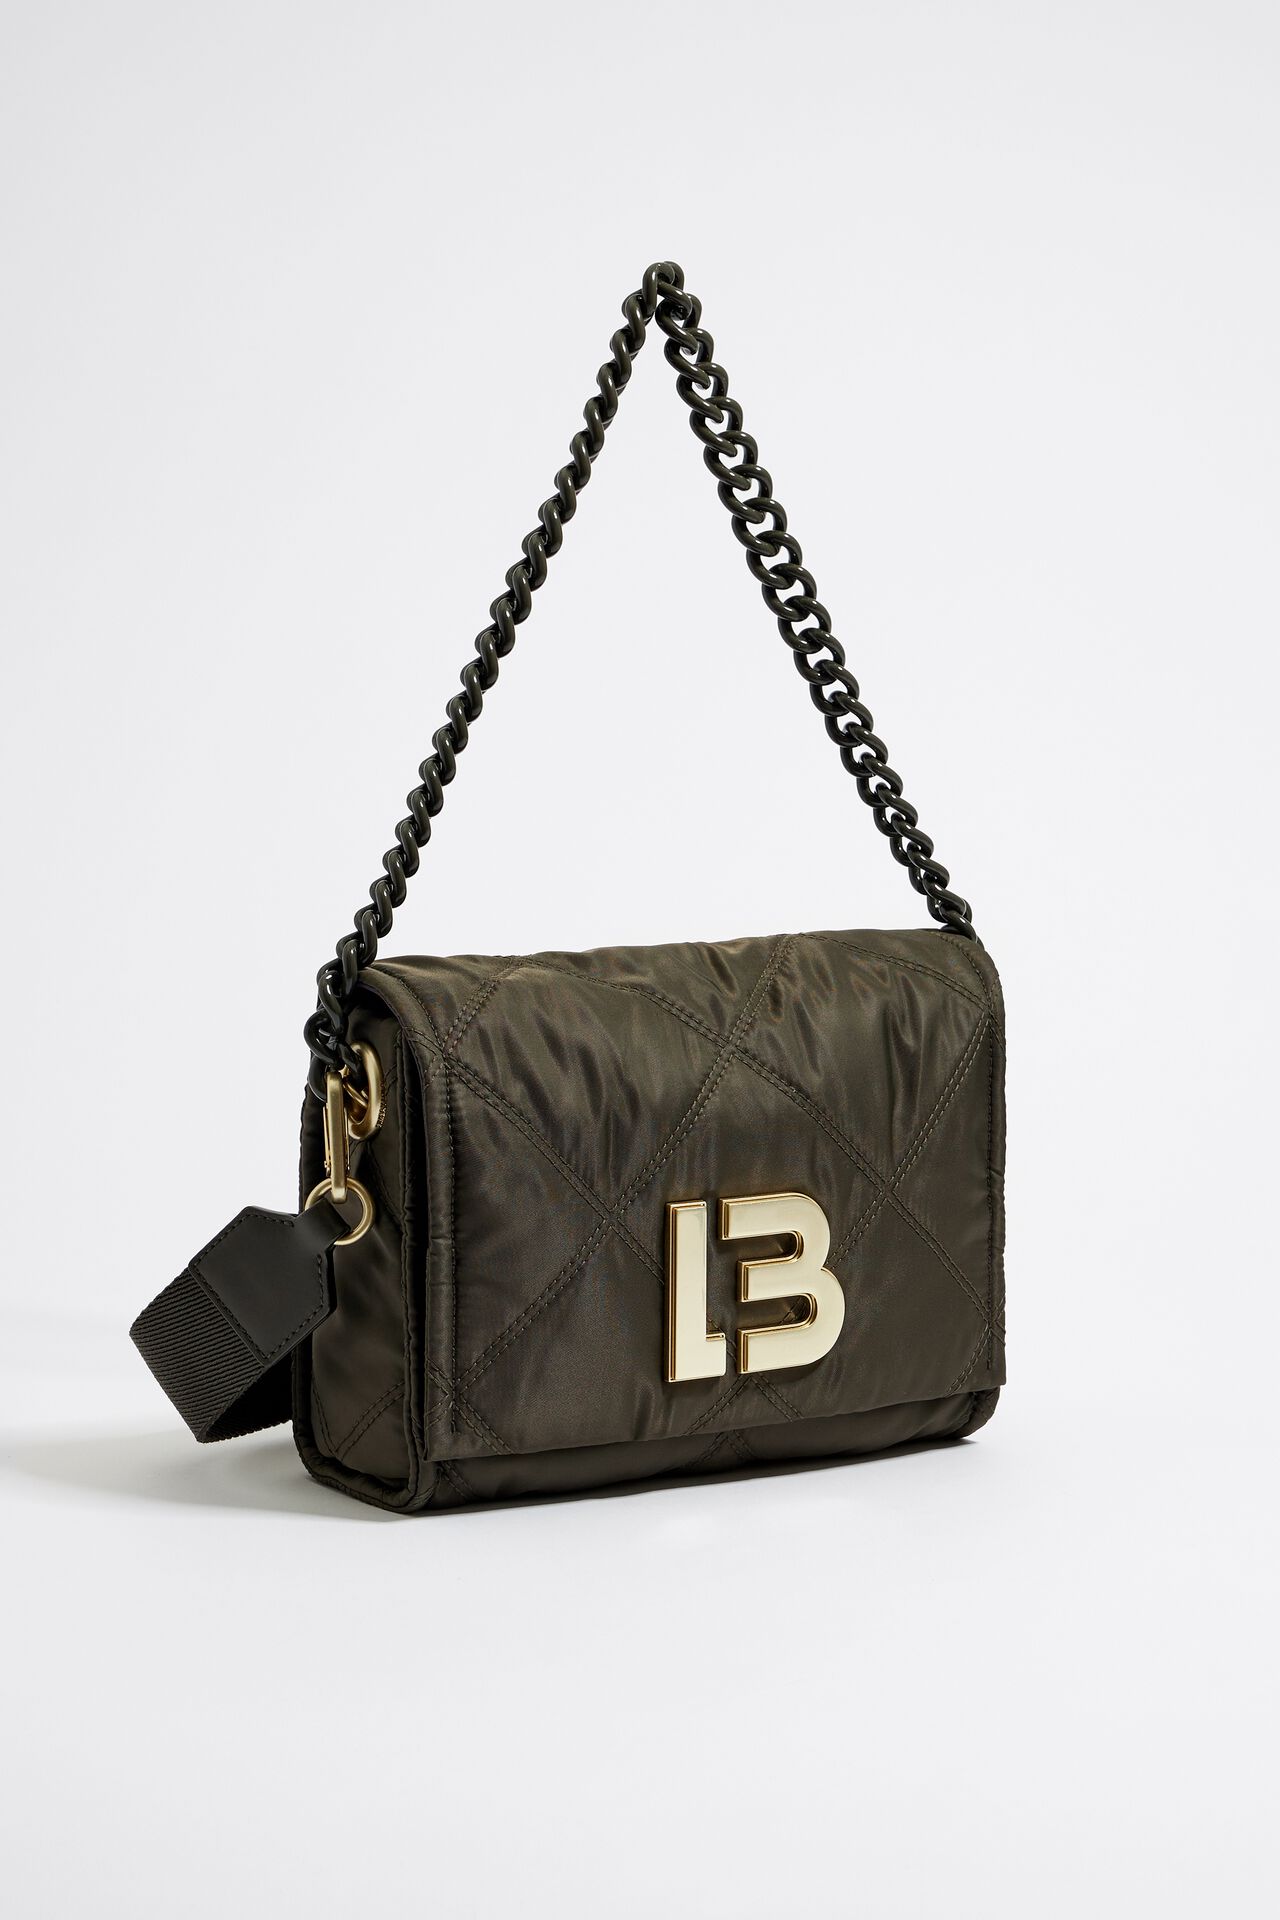 Bimba Y Lola Medium Black Nylon Crossbody Bag with Gold Hardware